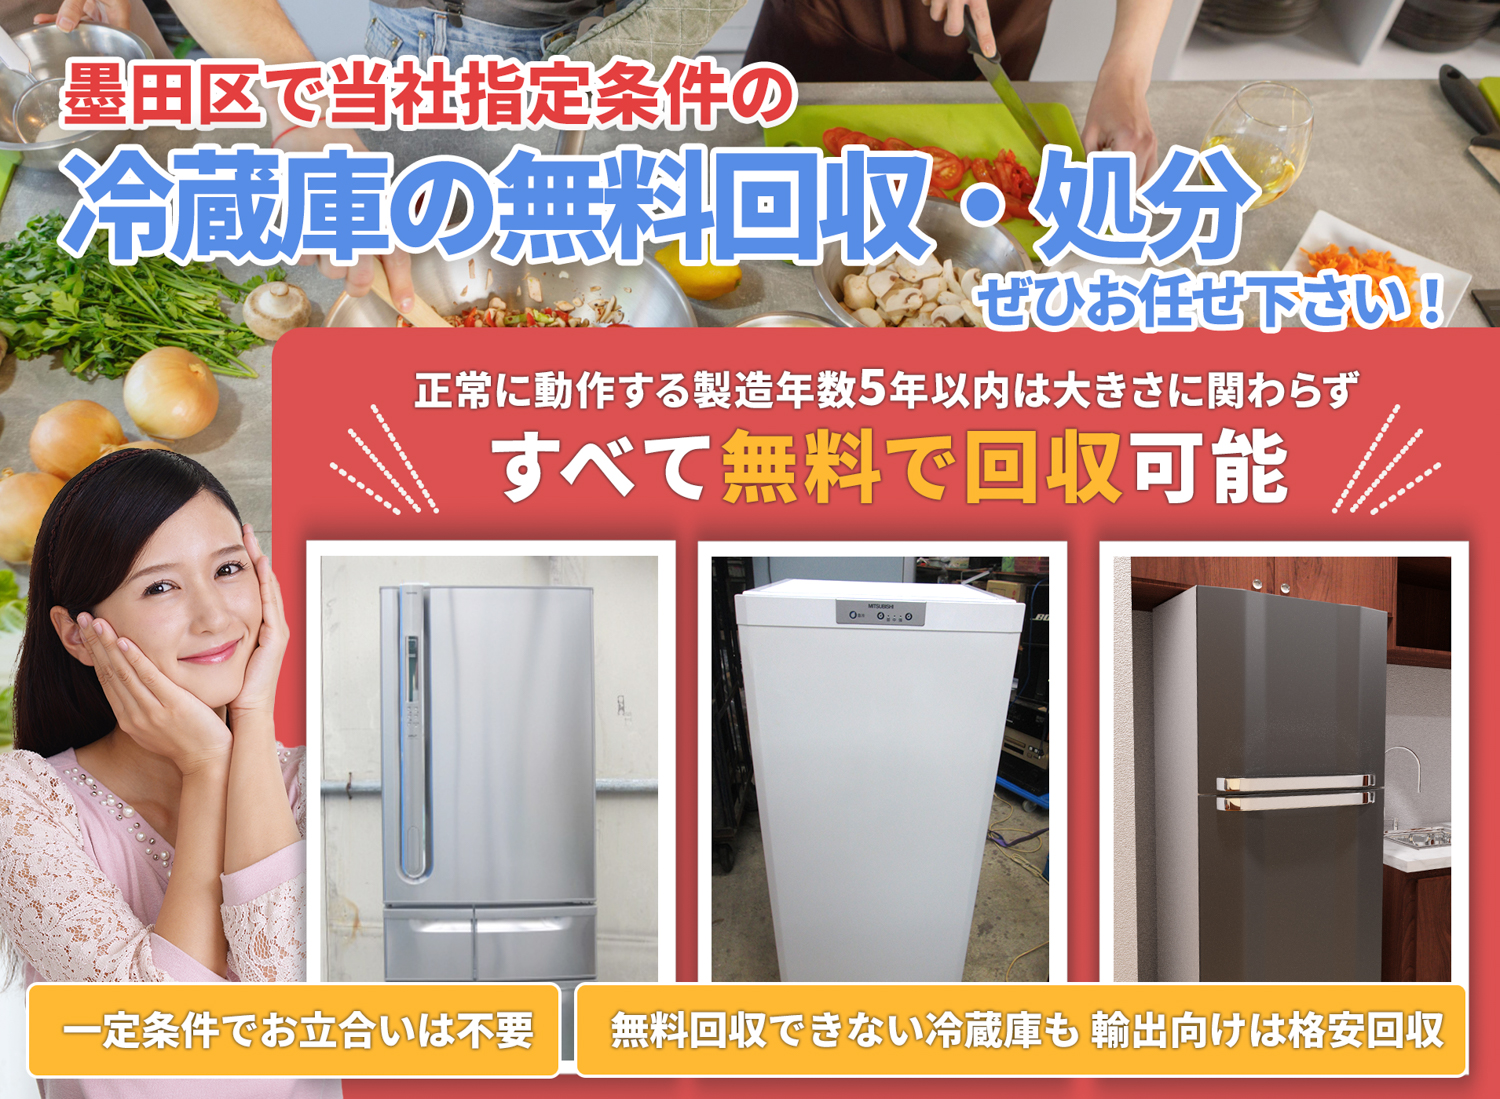 墨田区で丁寧に「お客様と寄り添う」冷蔵庫無料回収処分隊の冷蔵庫無料回収サービス